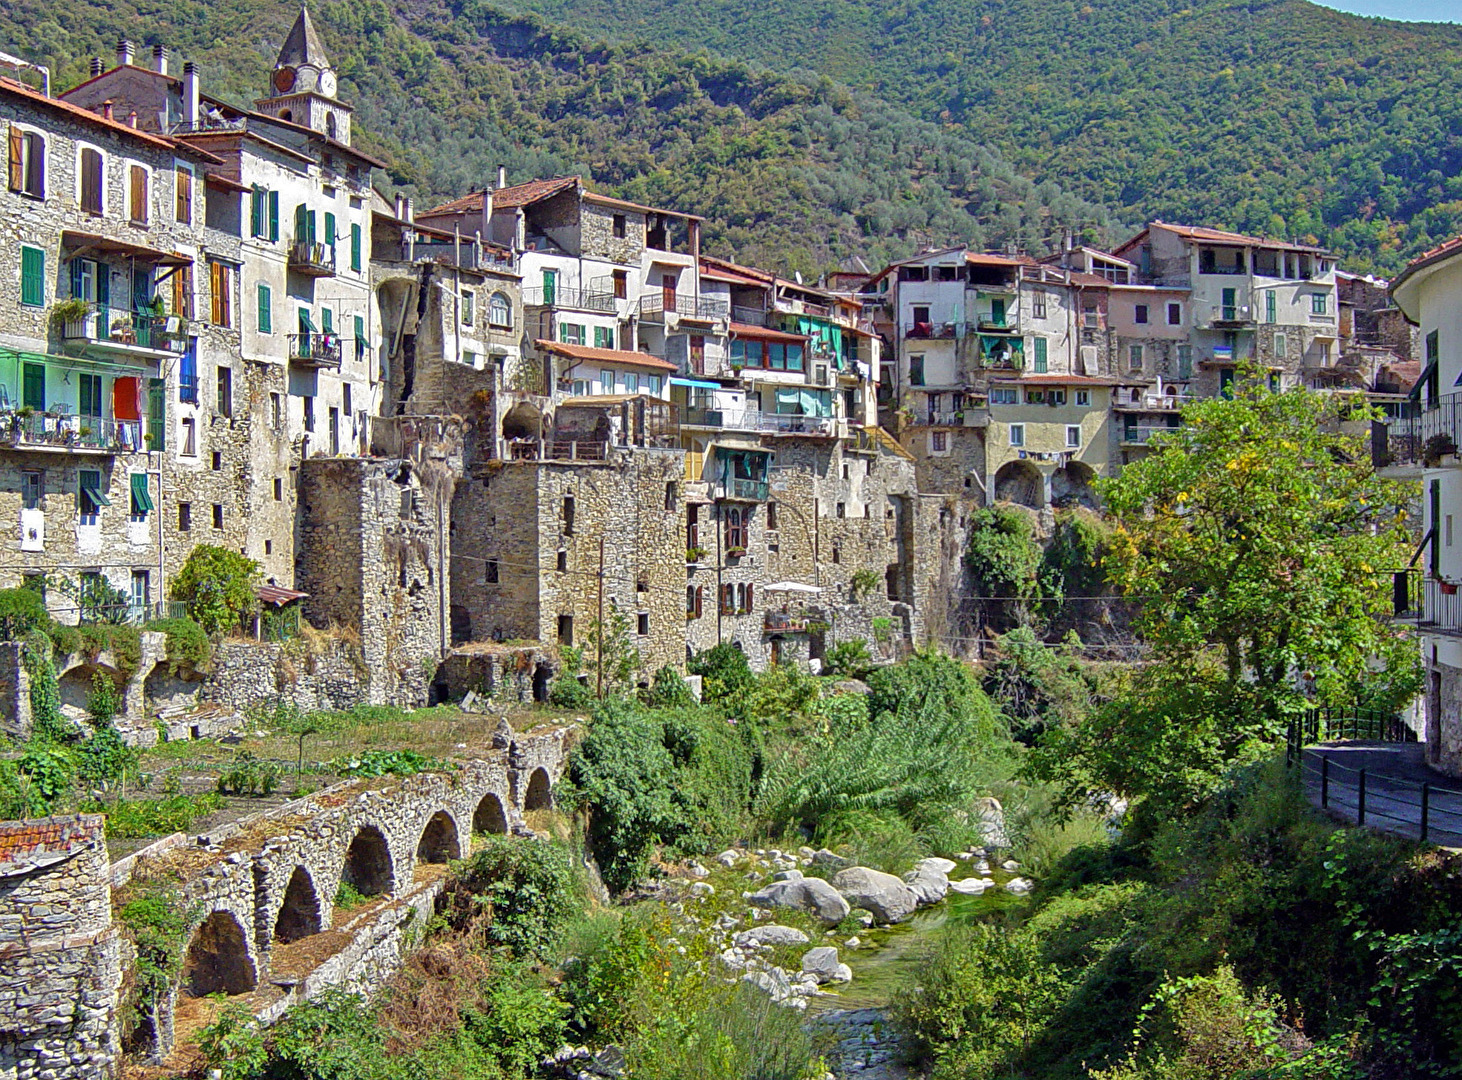 Das mittelalterliche Dorf Rocchetta Nervina